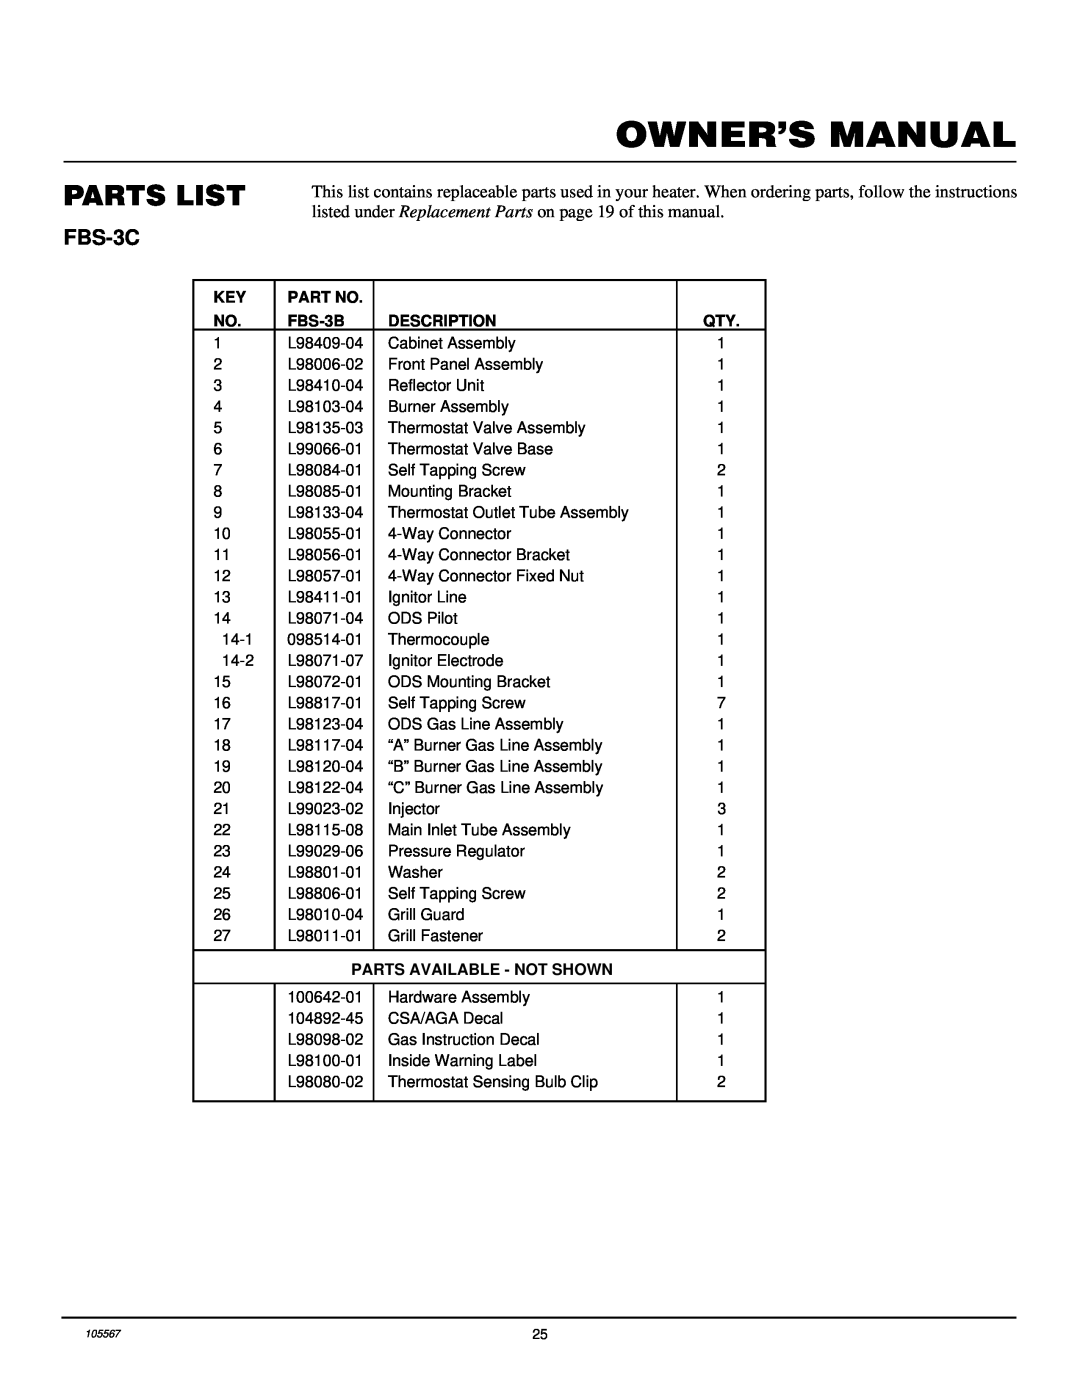 Desa FB-3B installation manual Parts List, FBS-3C 